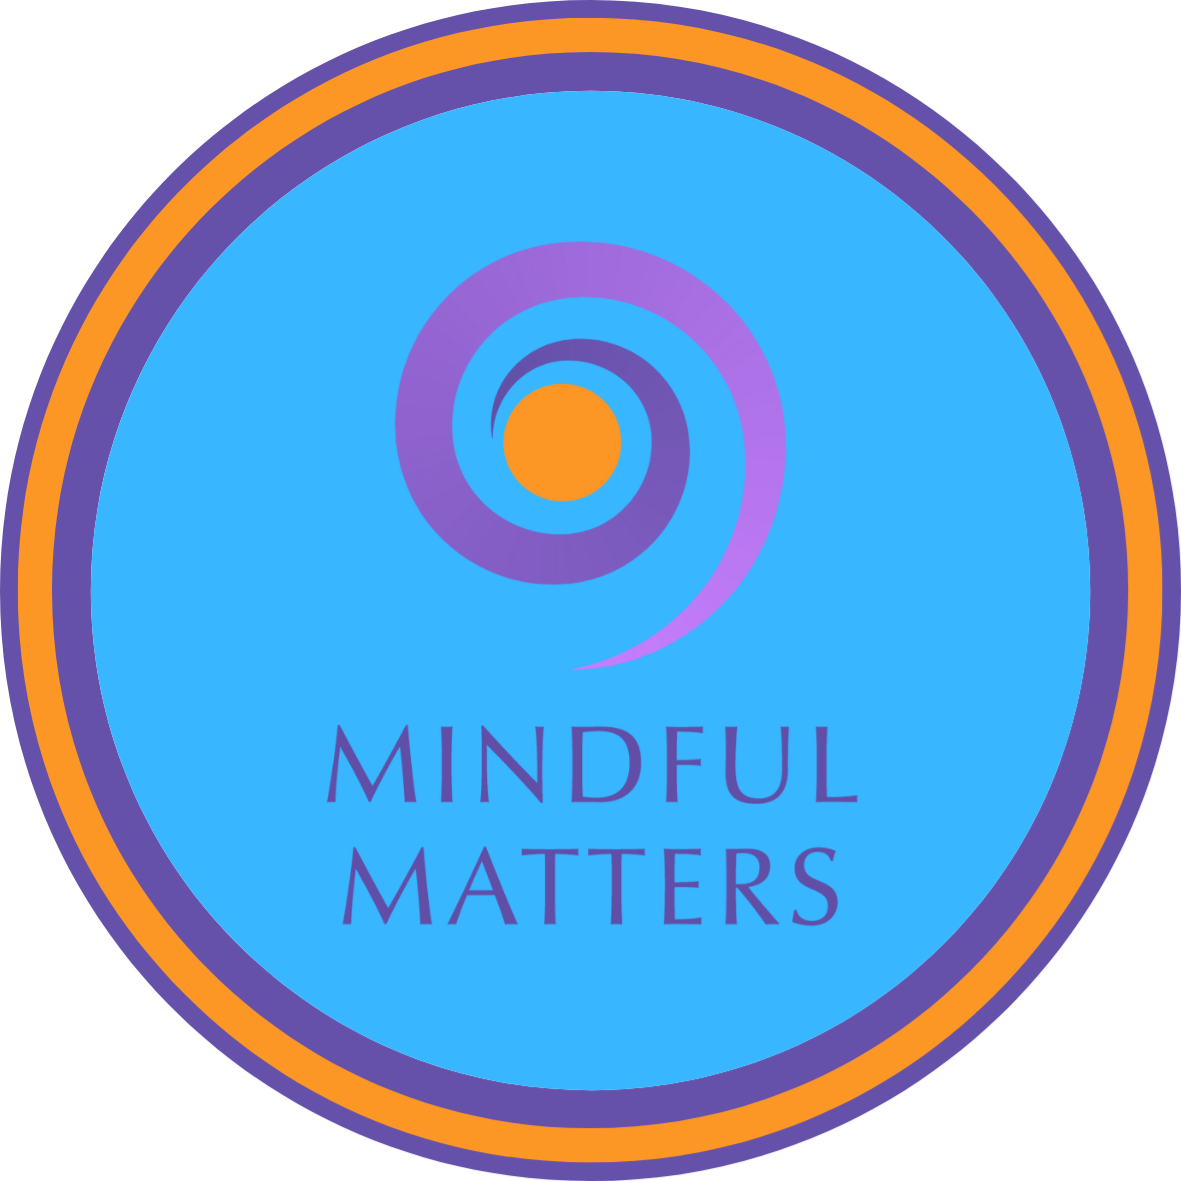 midful matters logo